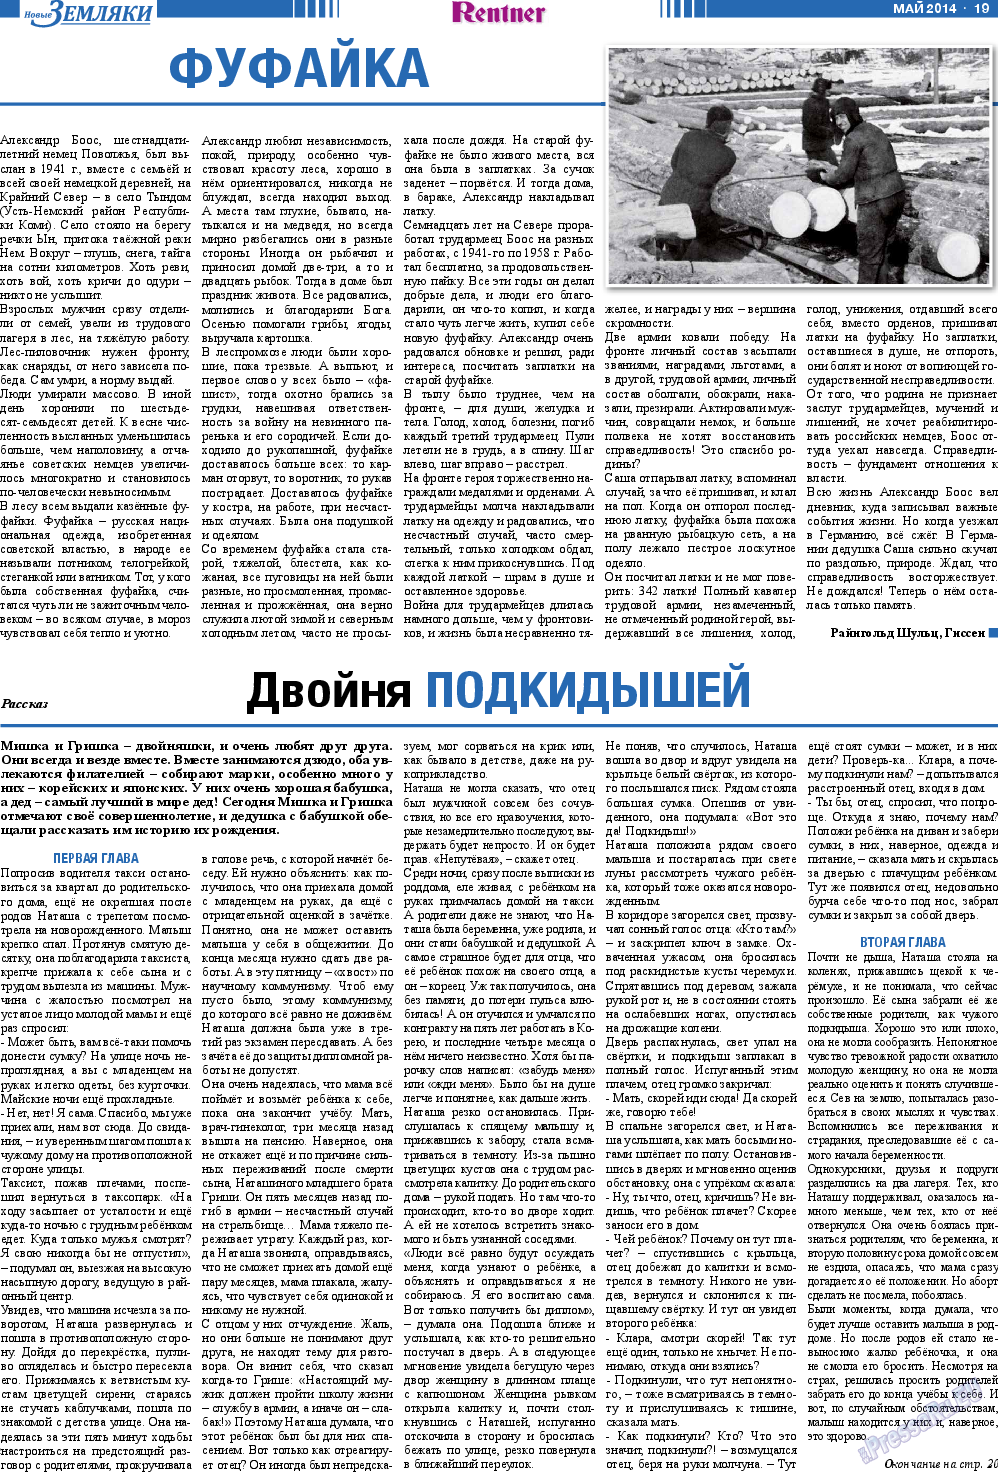 Новые Земляки, газета. 2014 №5 стр.19